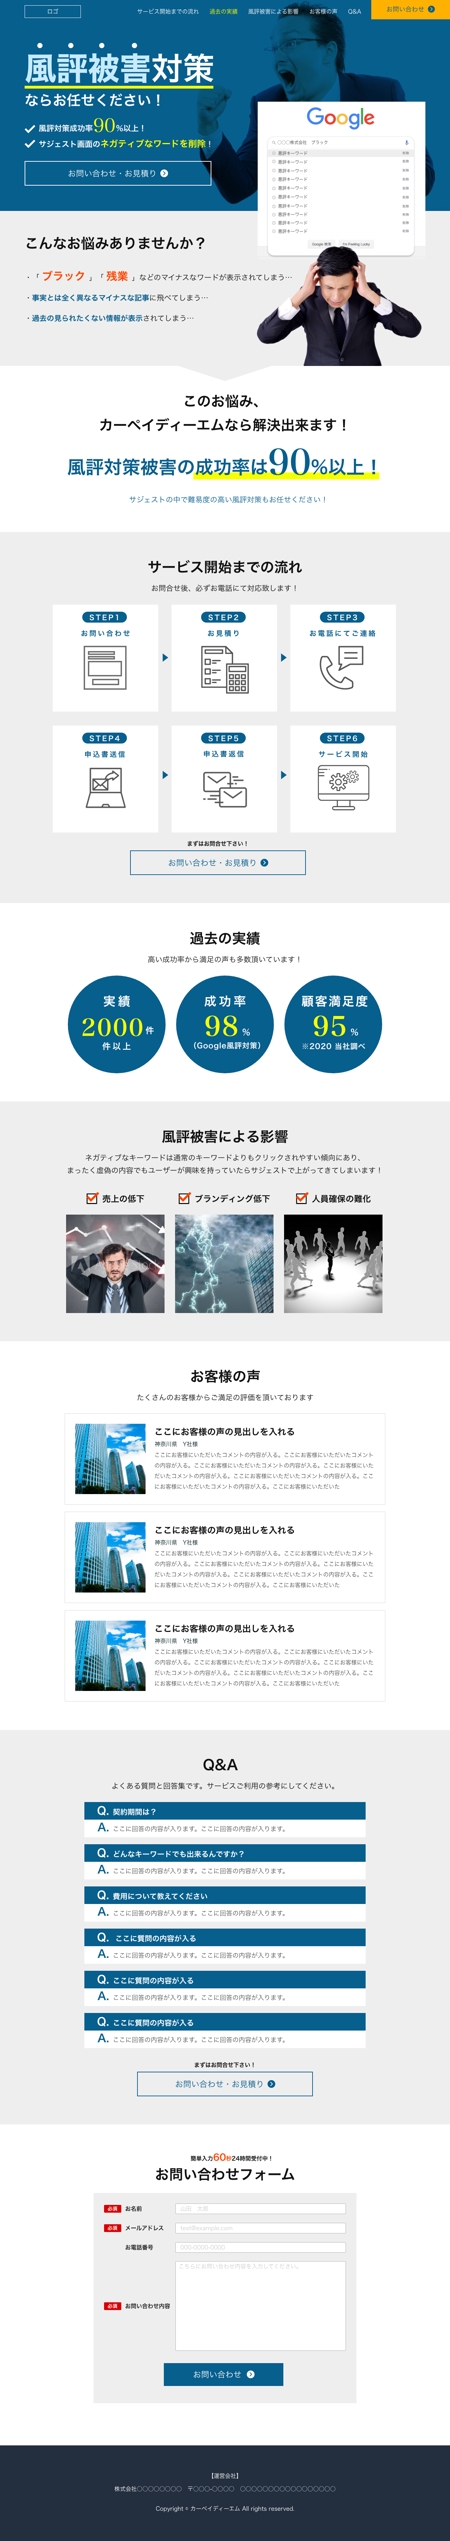 つばちゃ@Webデザイナー (153tsubacha)さんのウェブ広告に関する新規LPデザイン作成への提案